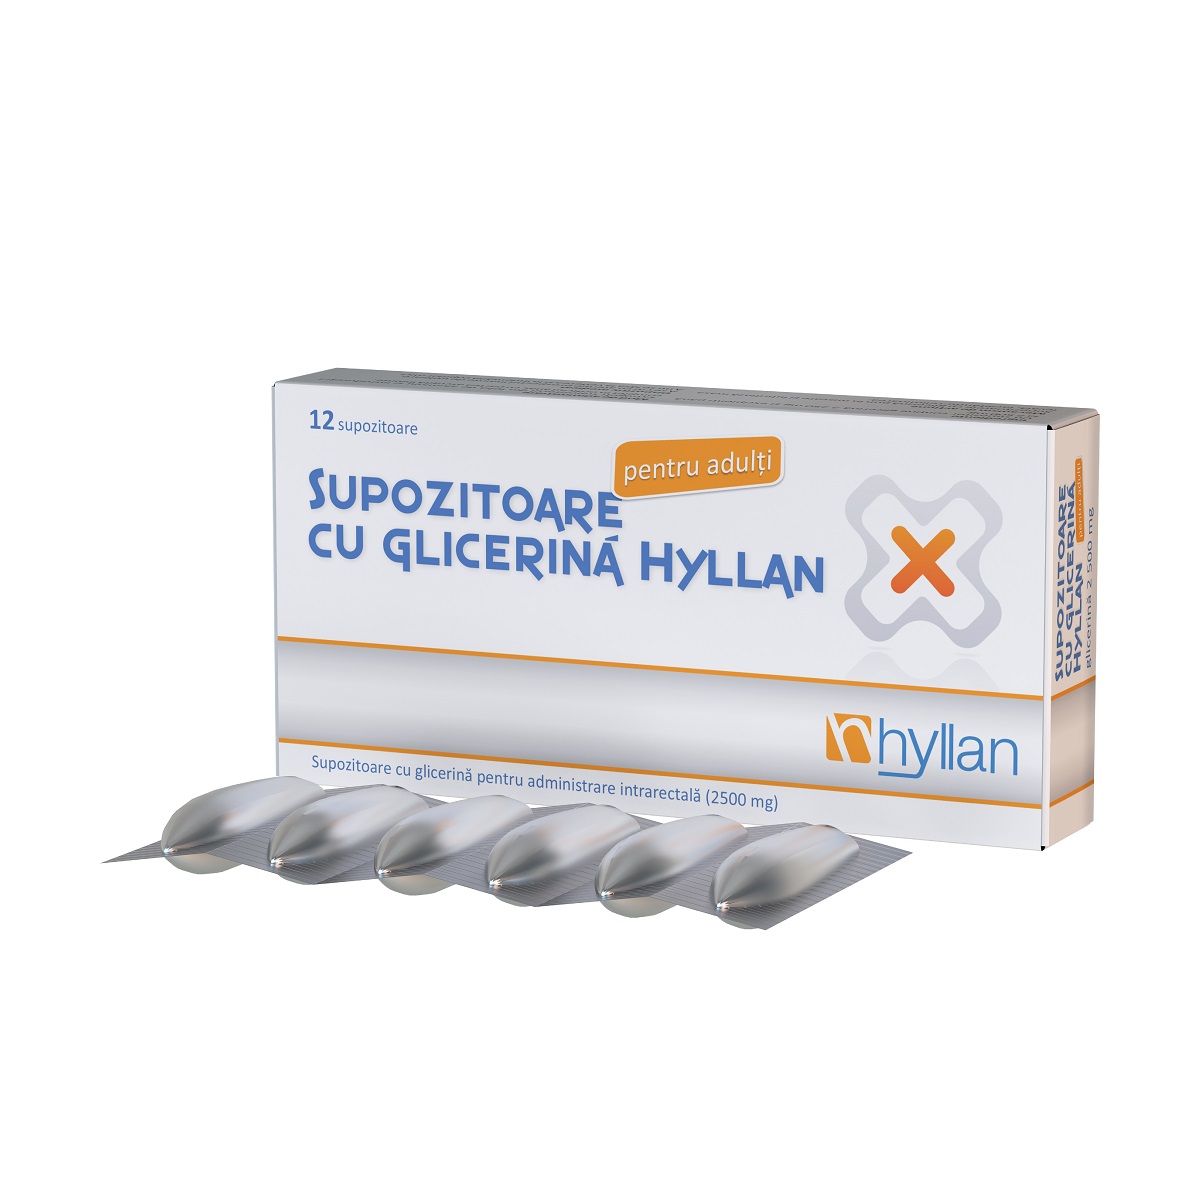 Suplimente alimentare - Supozitoare cu glicerina 2500 mg pentru adulti, 12 bucati, Hyllan , nordpharm.ro